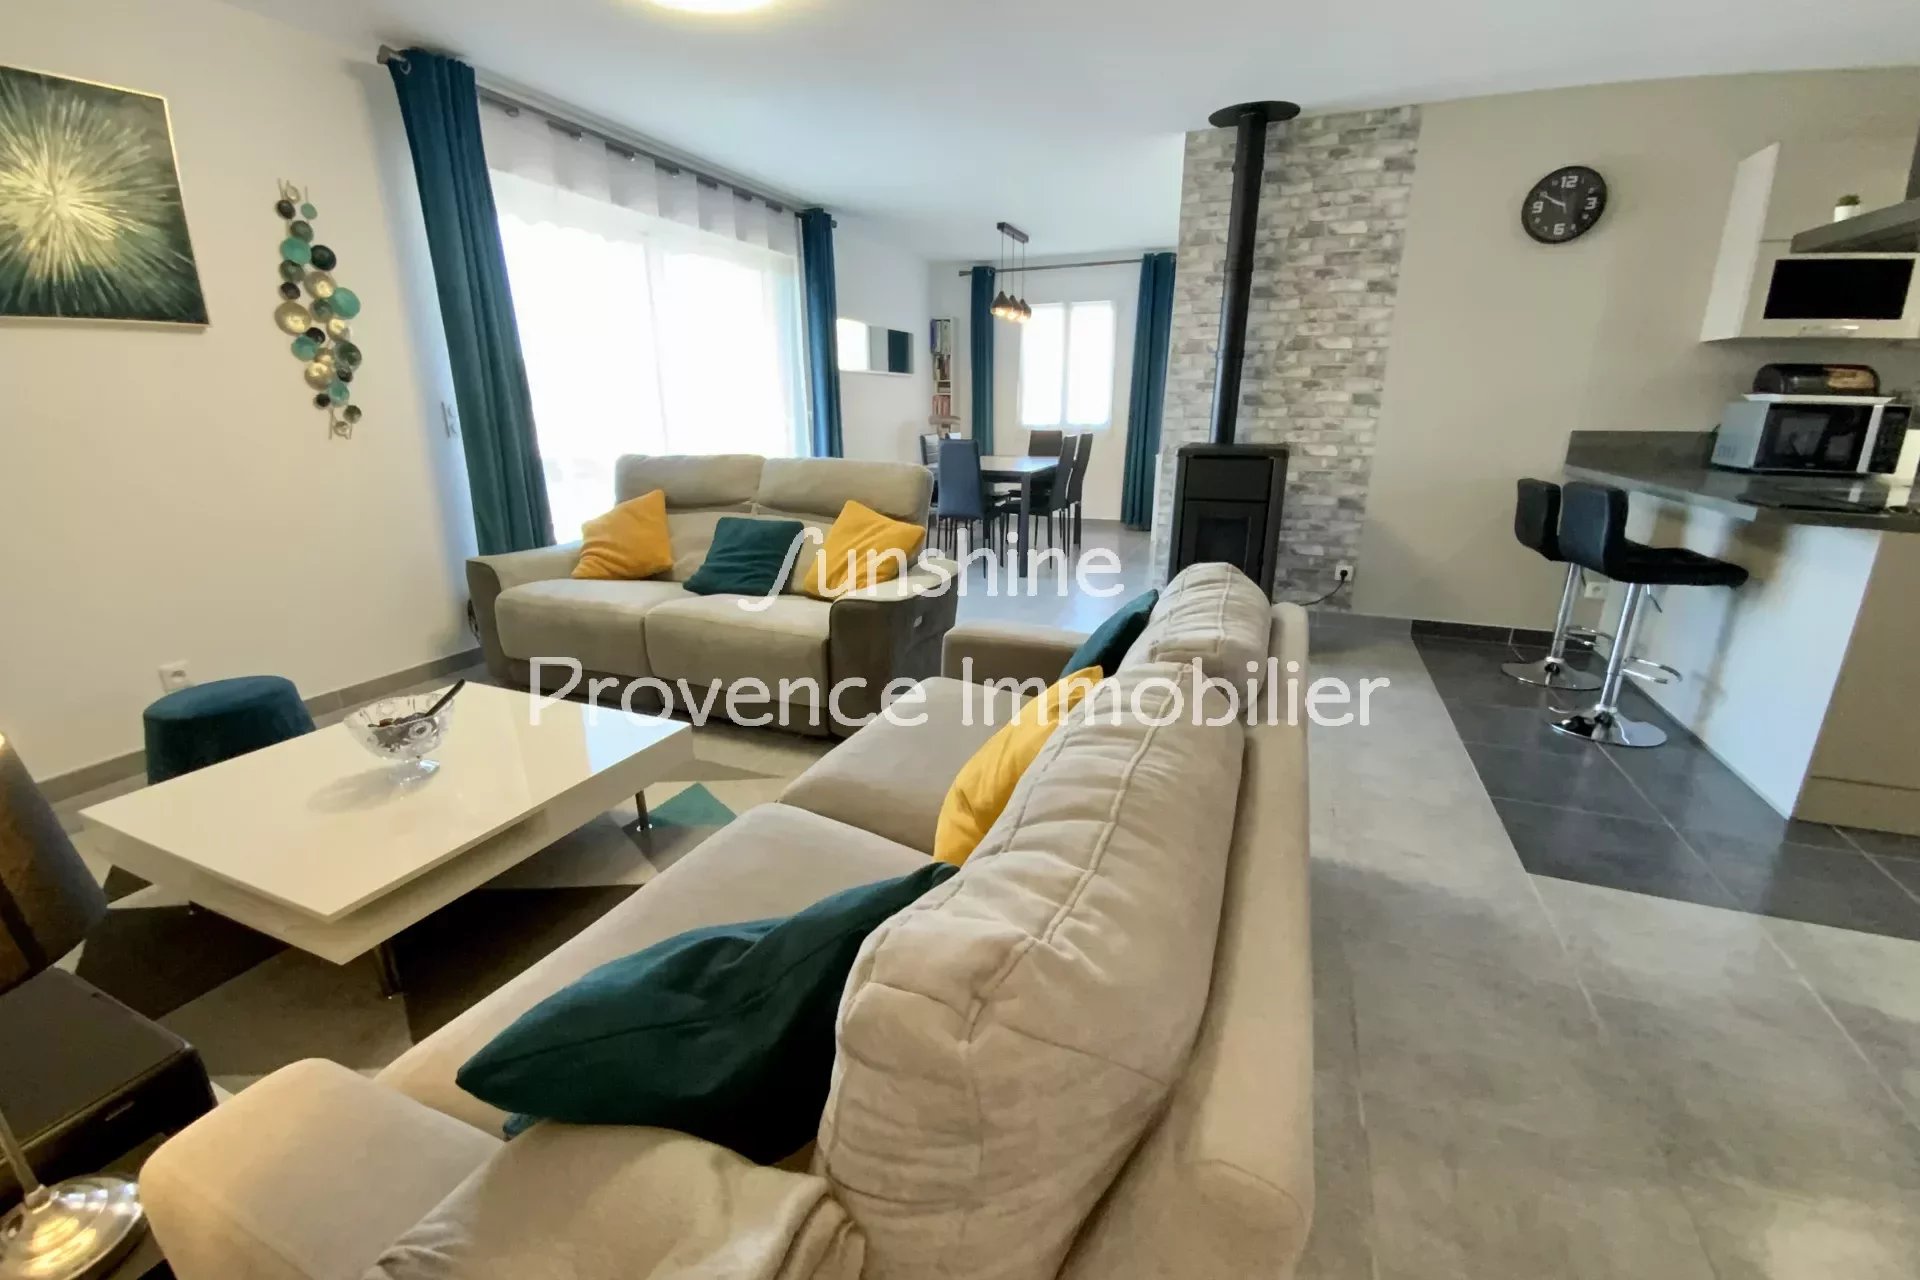 Vente Maison 99m² 5 Pièces à Lorgues (83510) - Sunshine Provence Immobilier